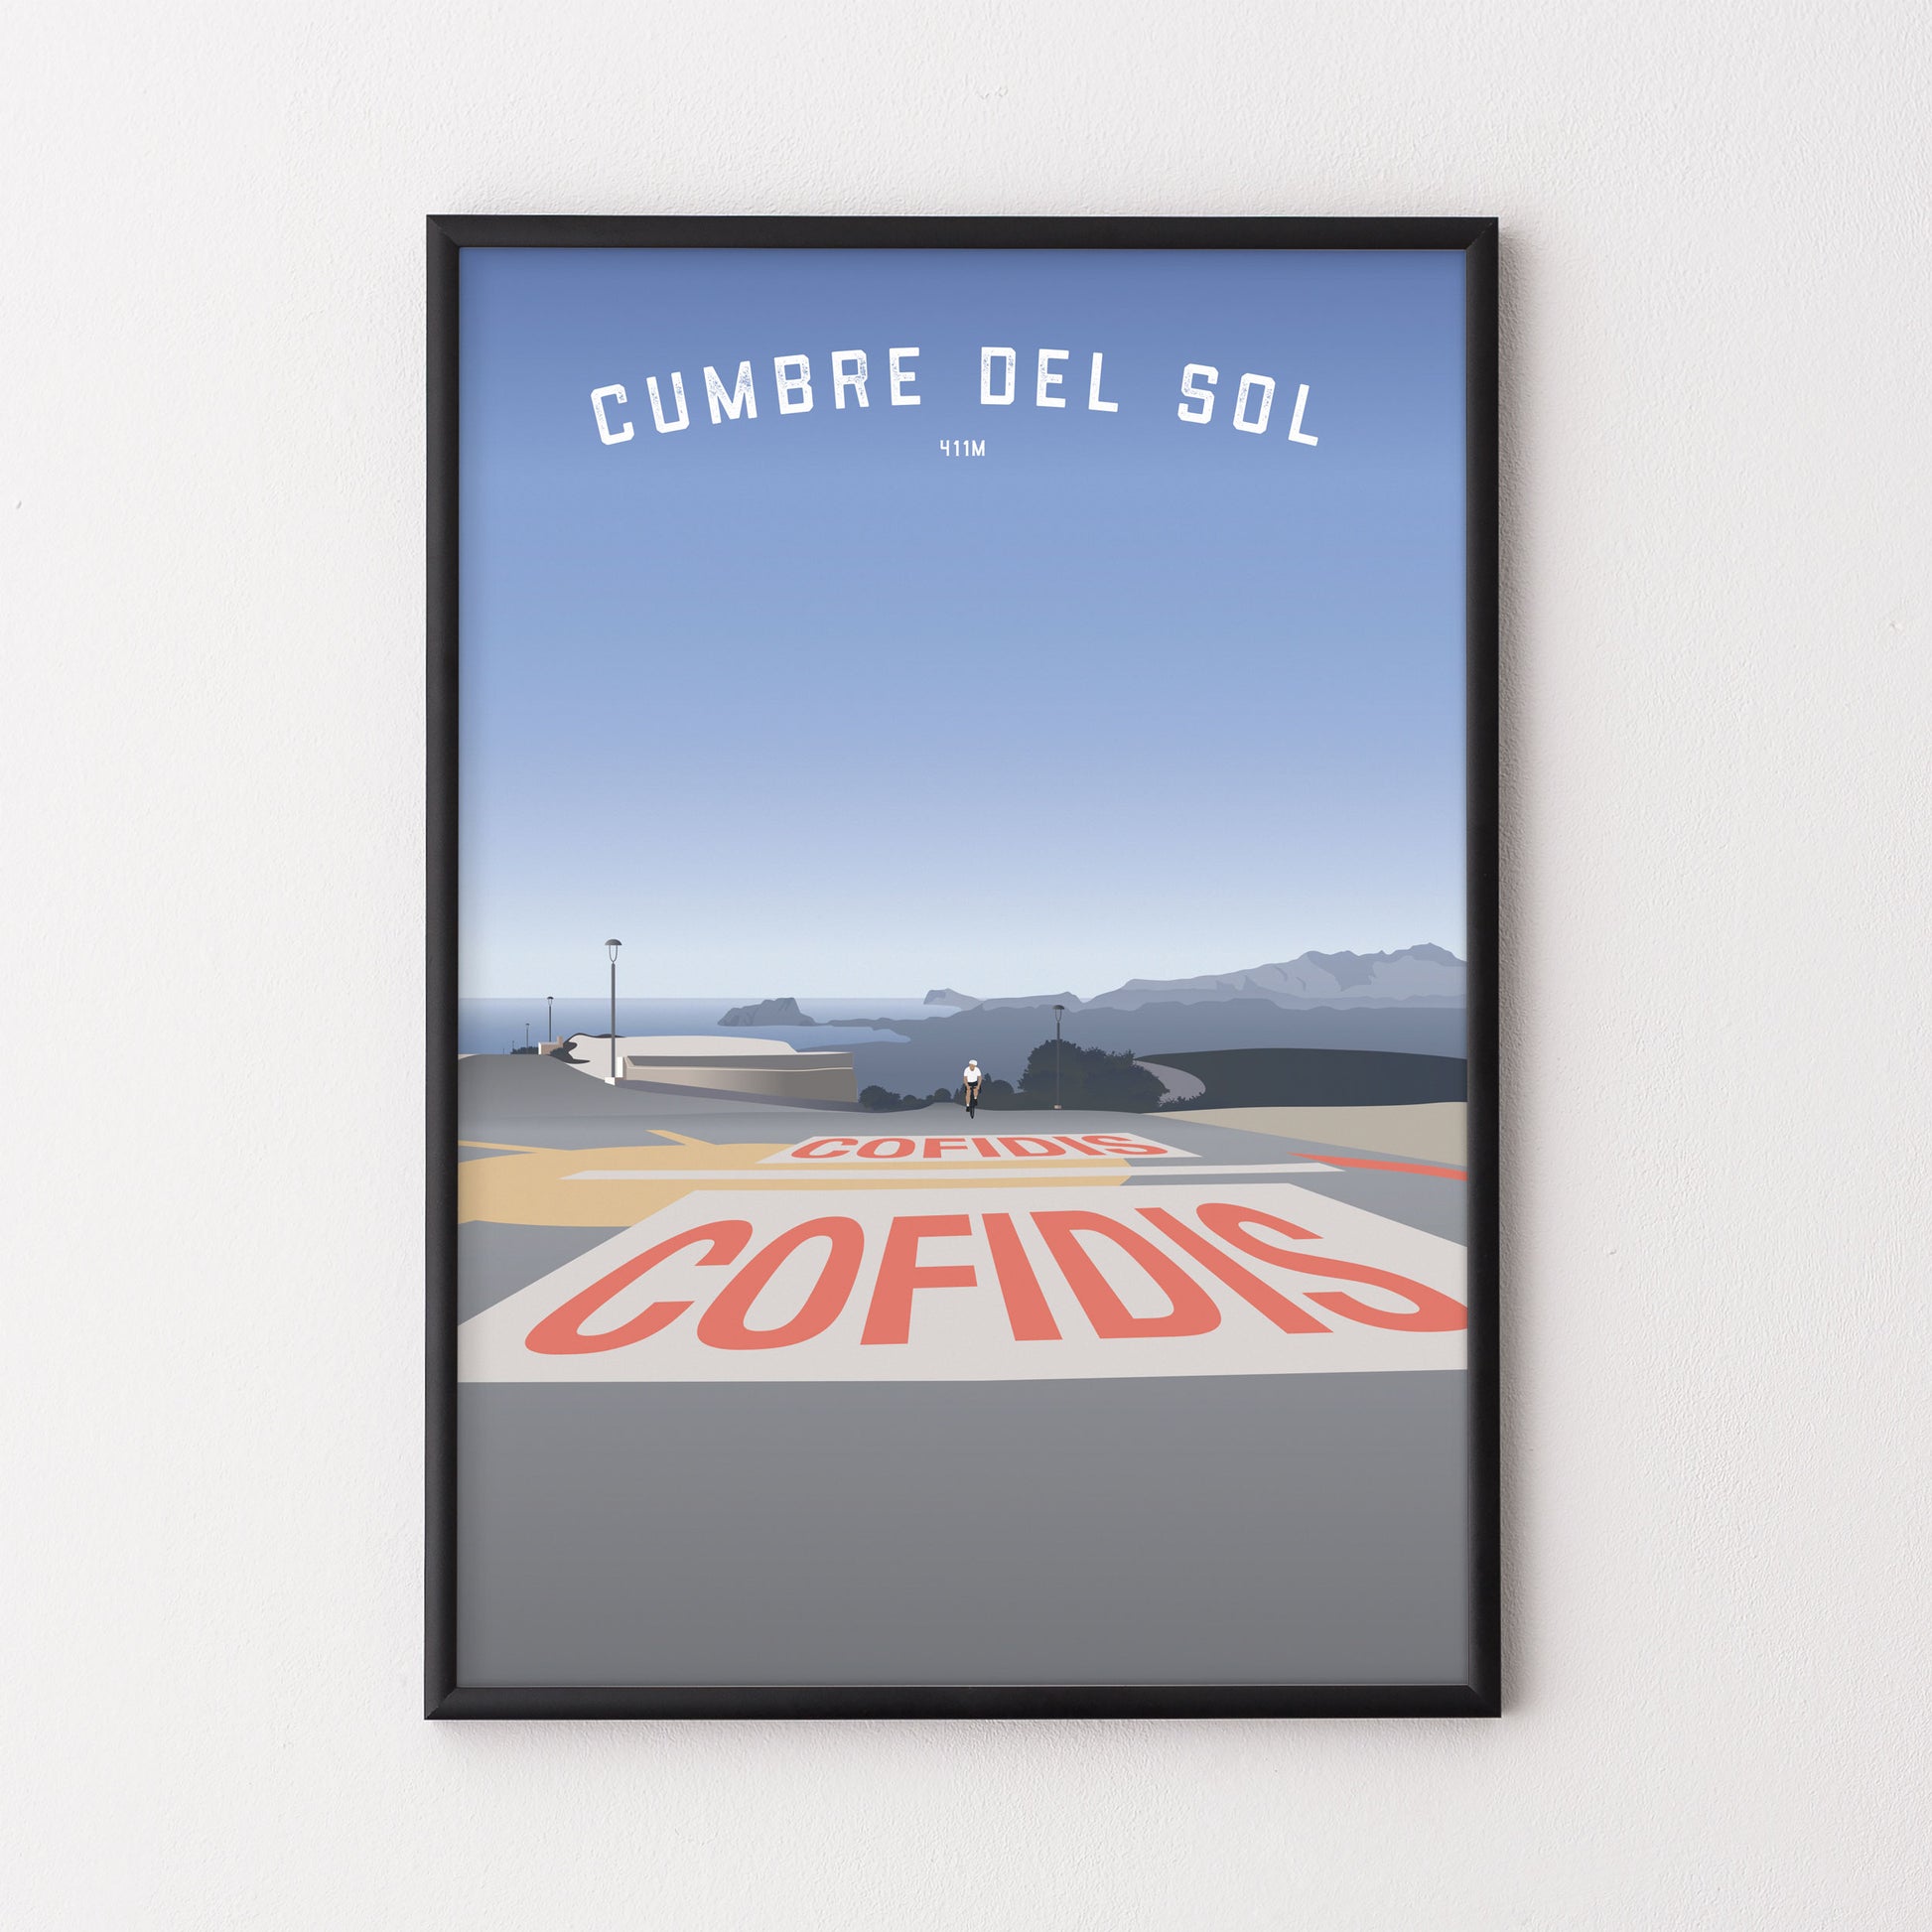 Cumbre del Sol – Poster – The English Cyclist